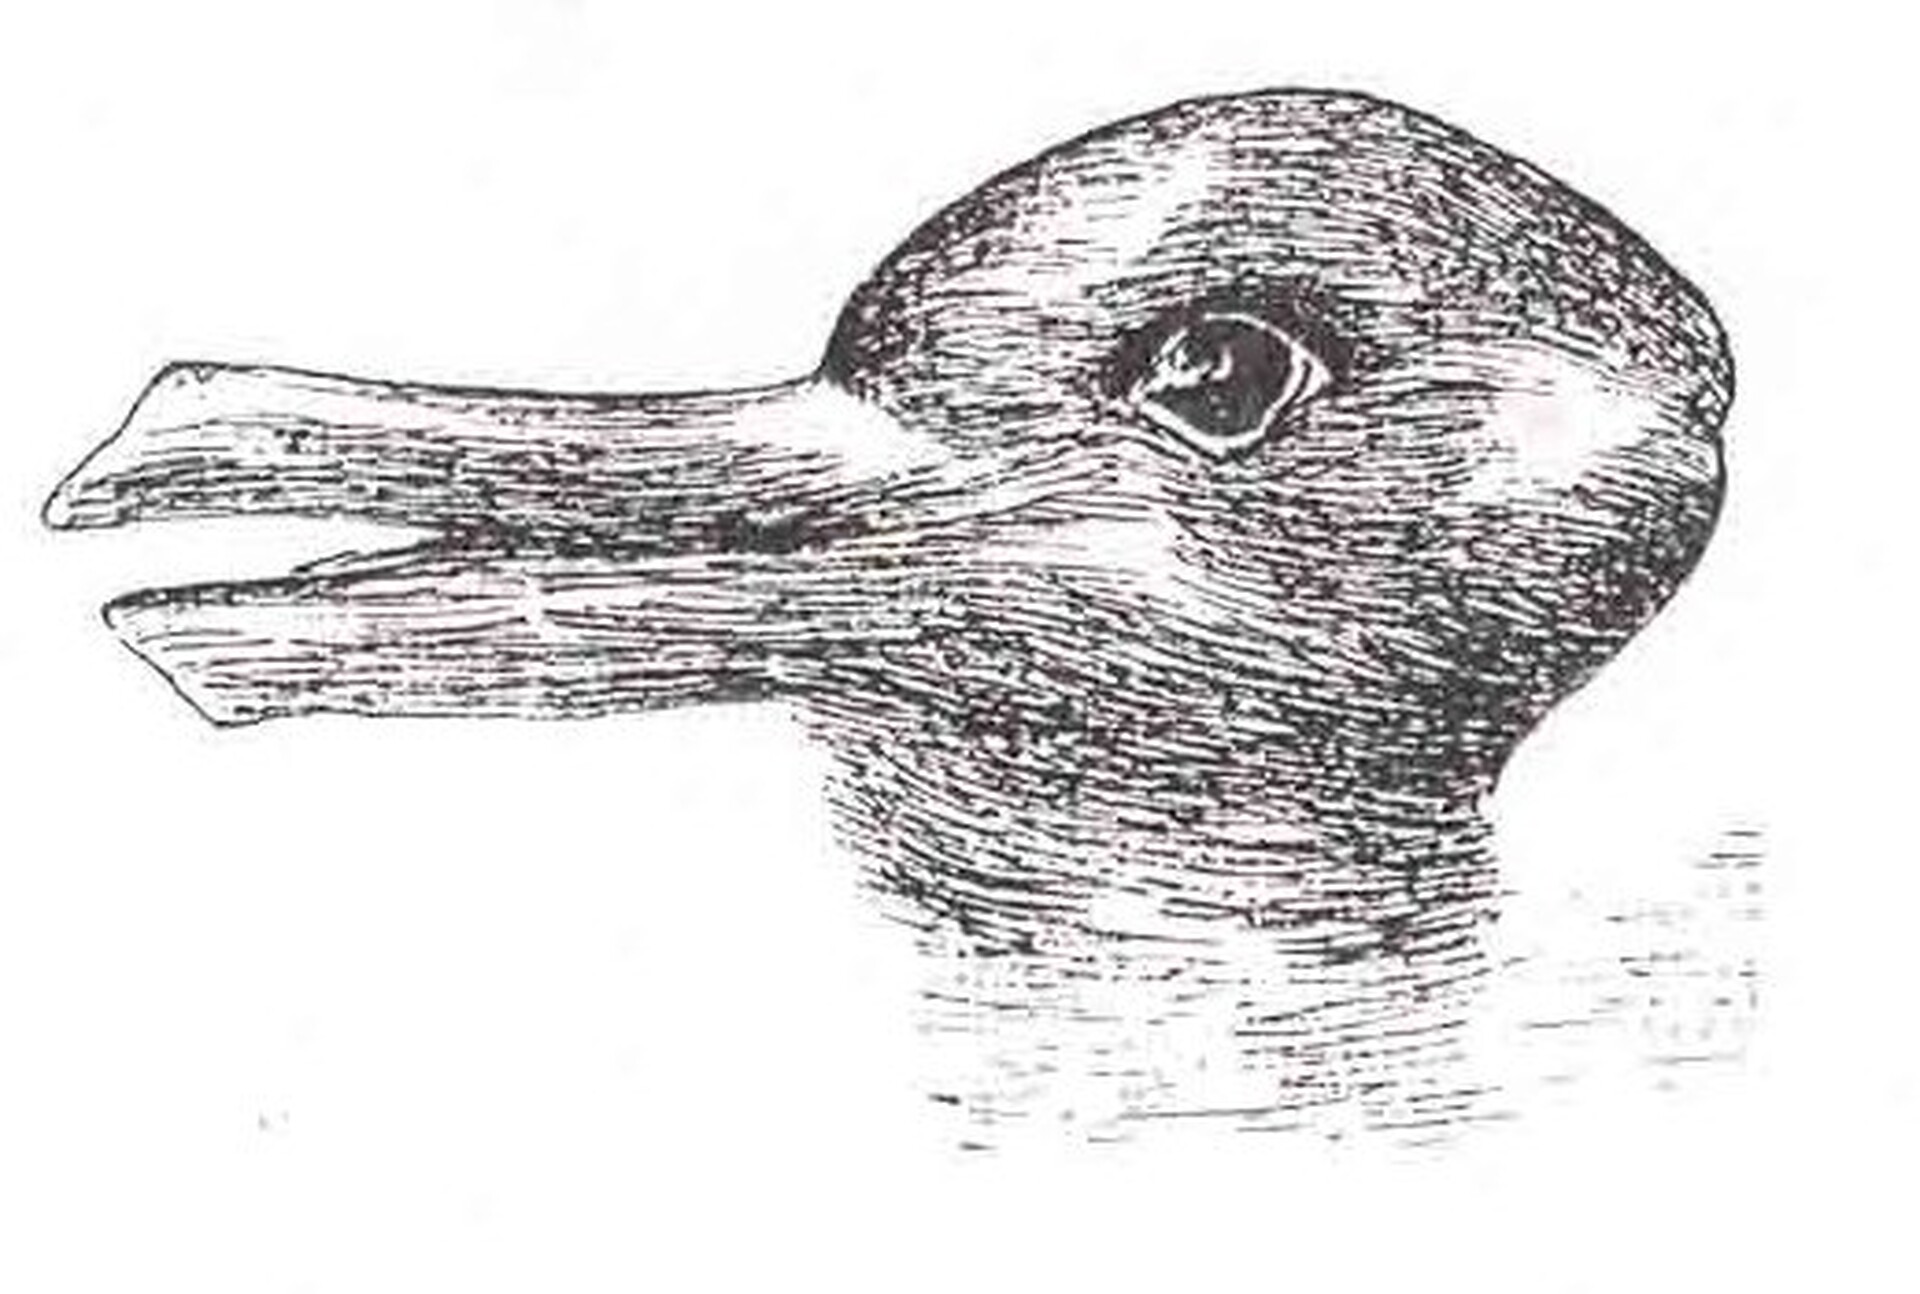  Rysunek przedstawia głowę zwierzęcia. Rysownik stworzył złudzenie optyczne: w zależności od sposobu patrzenia, na obrazku można zobaczyć głowę królika skierowaną w prawo albo kaczkę z głową skierowaną w lewo. 